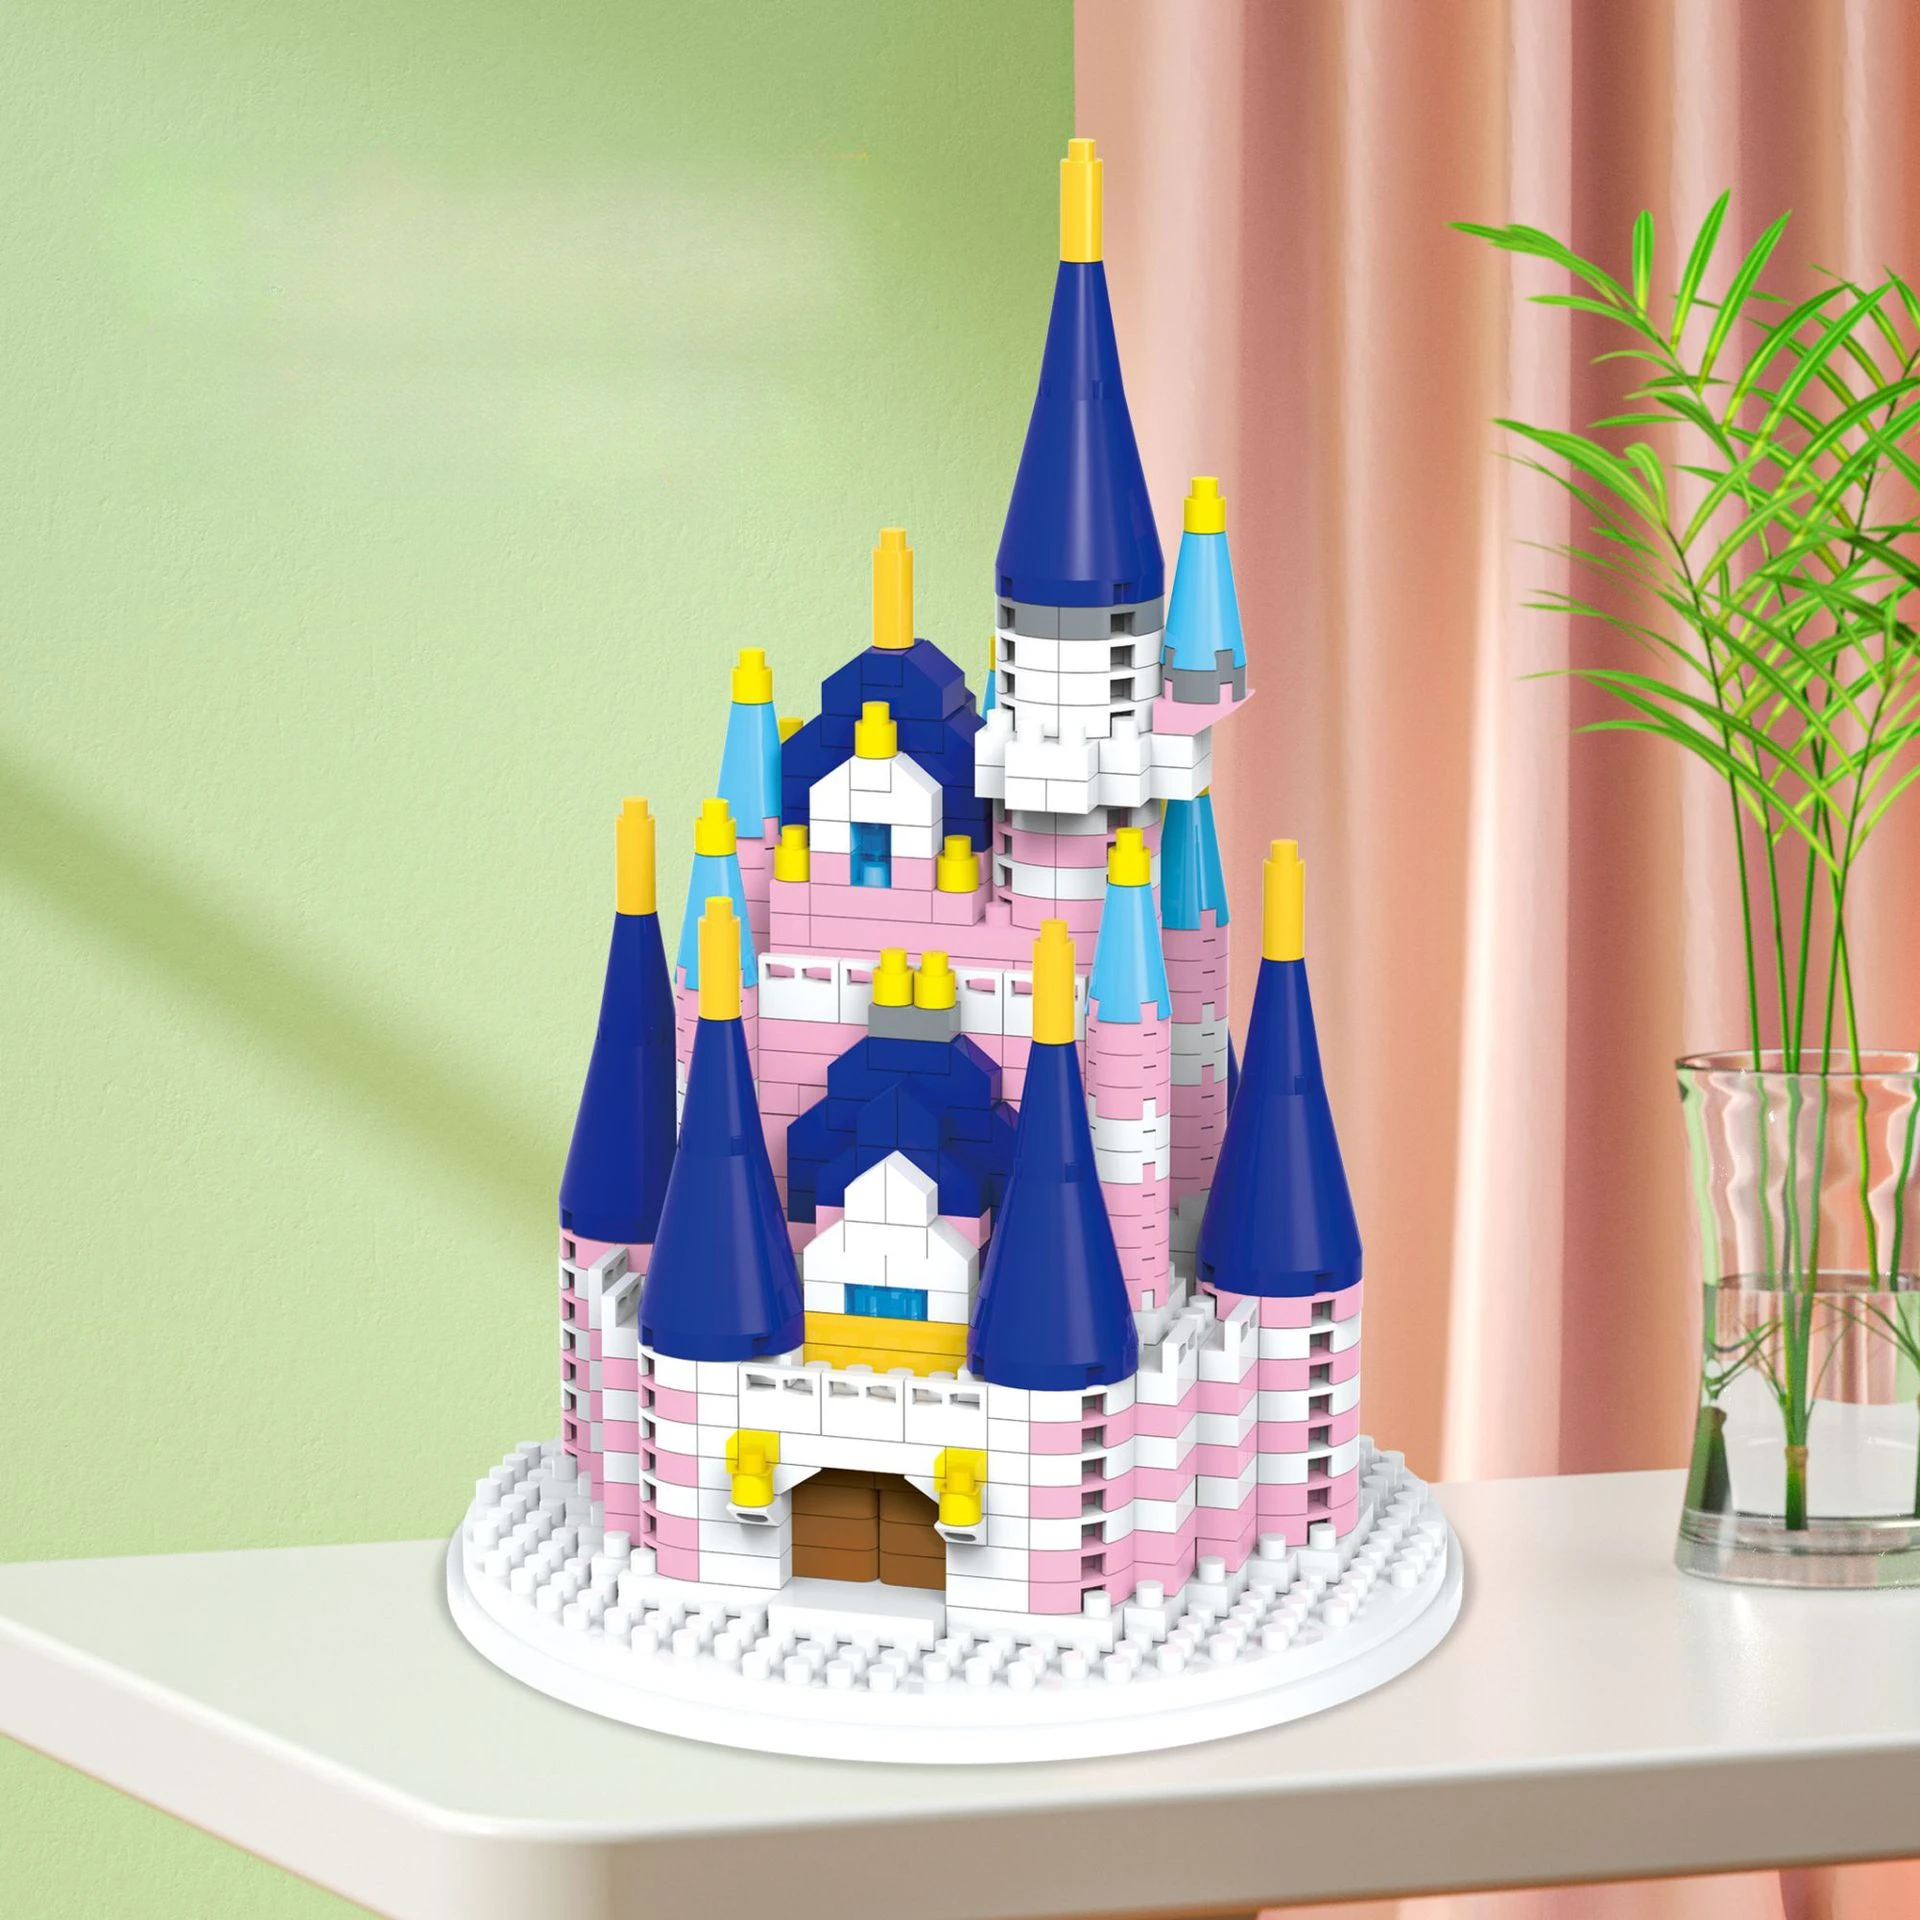 

Конструктор Мини-принцесса мечта замок набор строительных блоков фигурки кирпичи развивающие игрушки для девочек подарок на день рождения